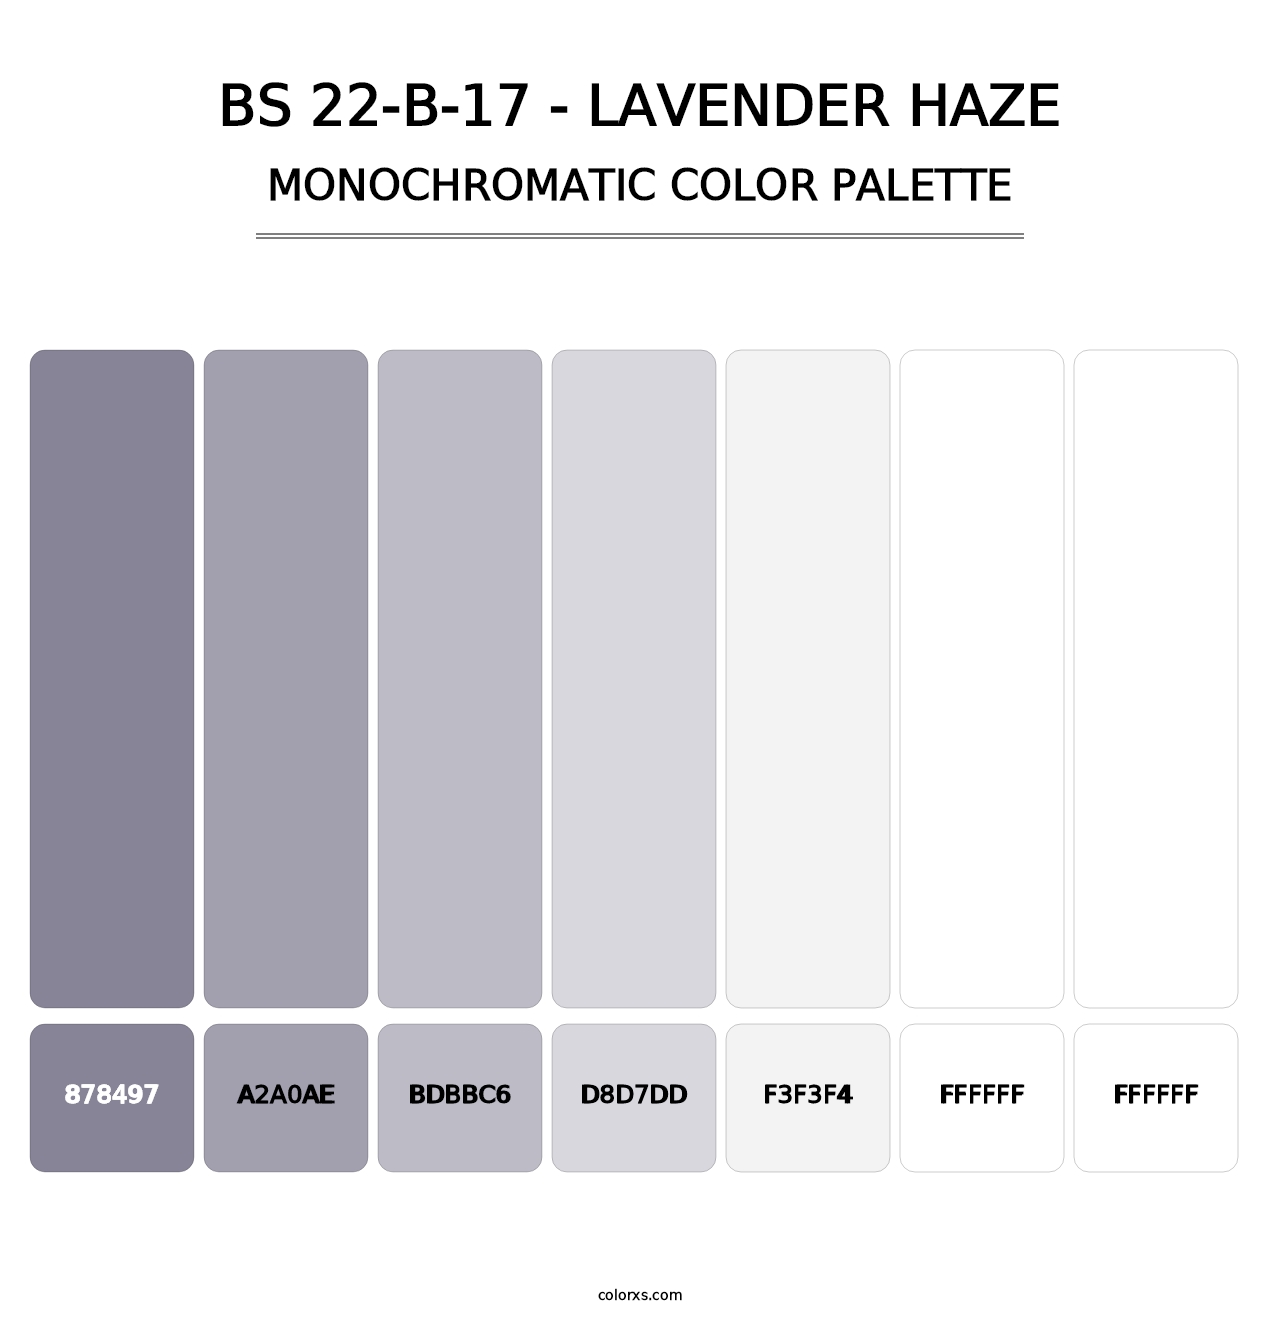 BS 22-B-17 - Lavender Haze - Monochromatic Color Palette